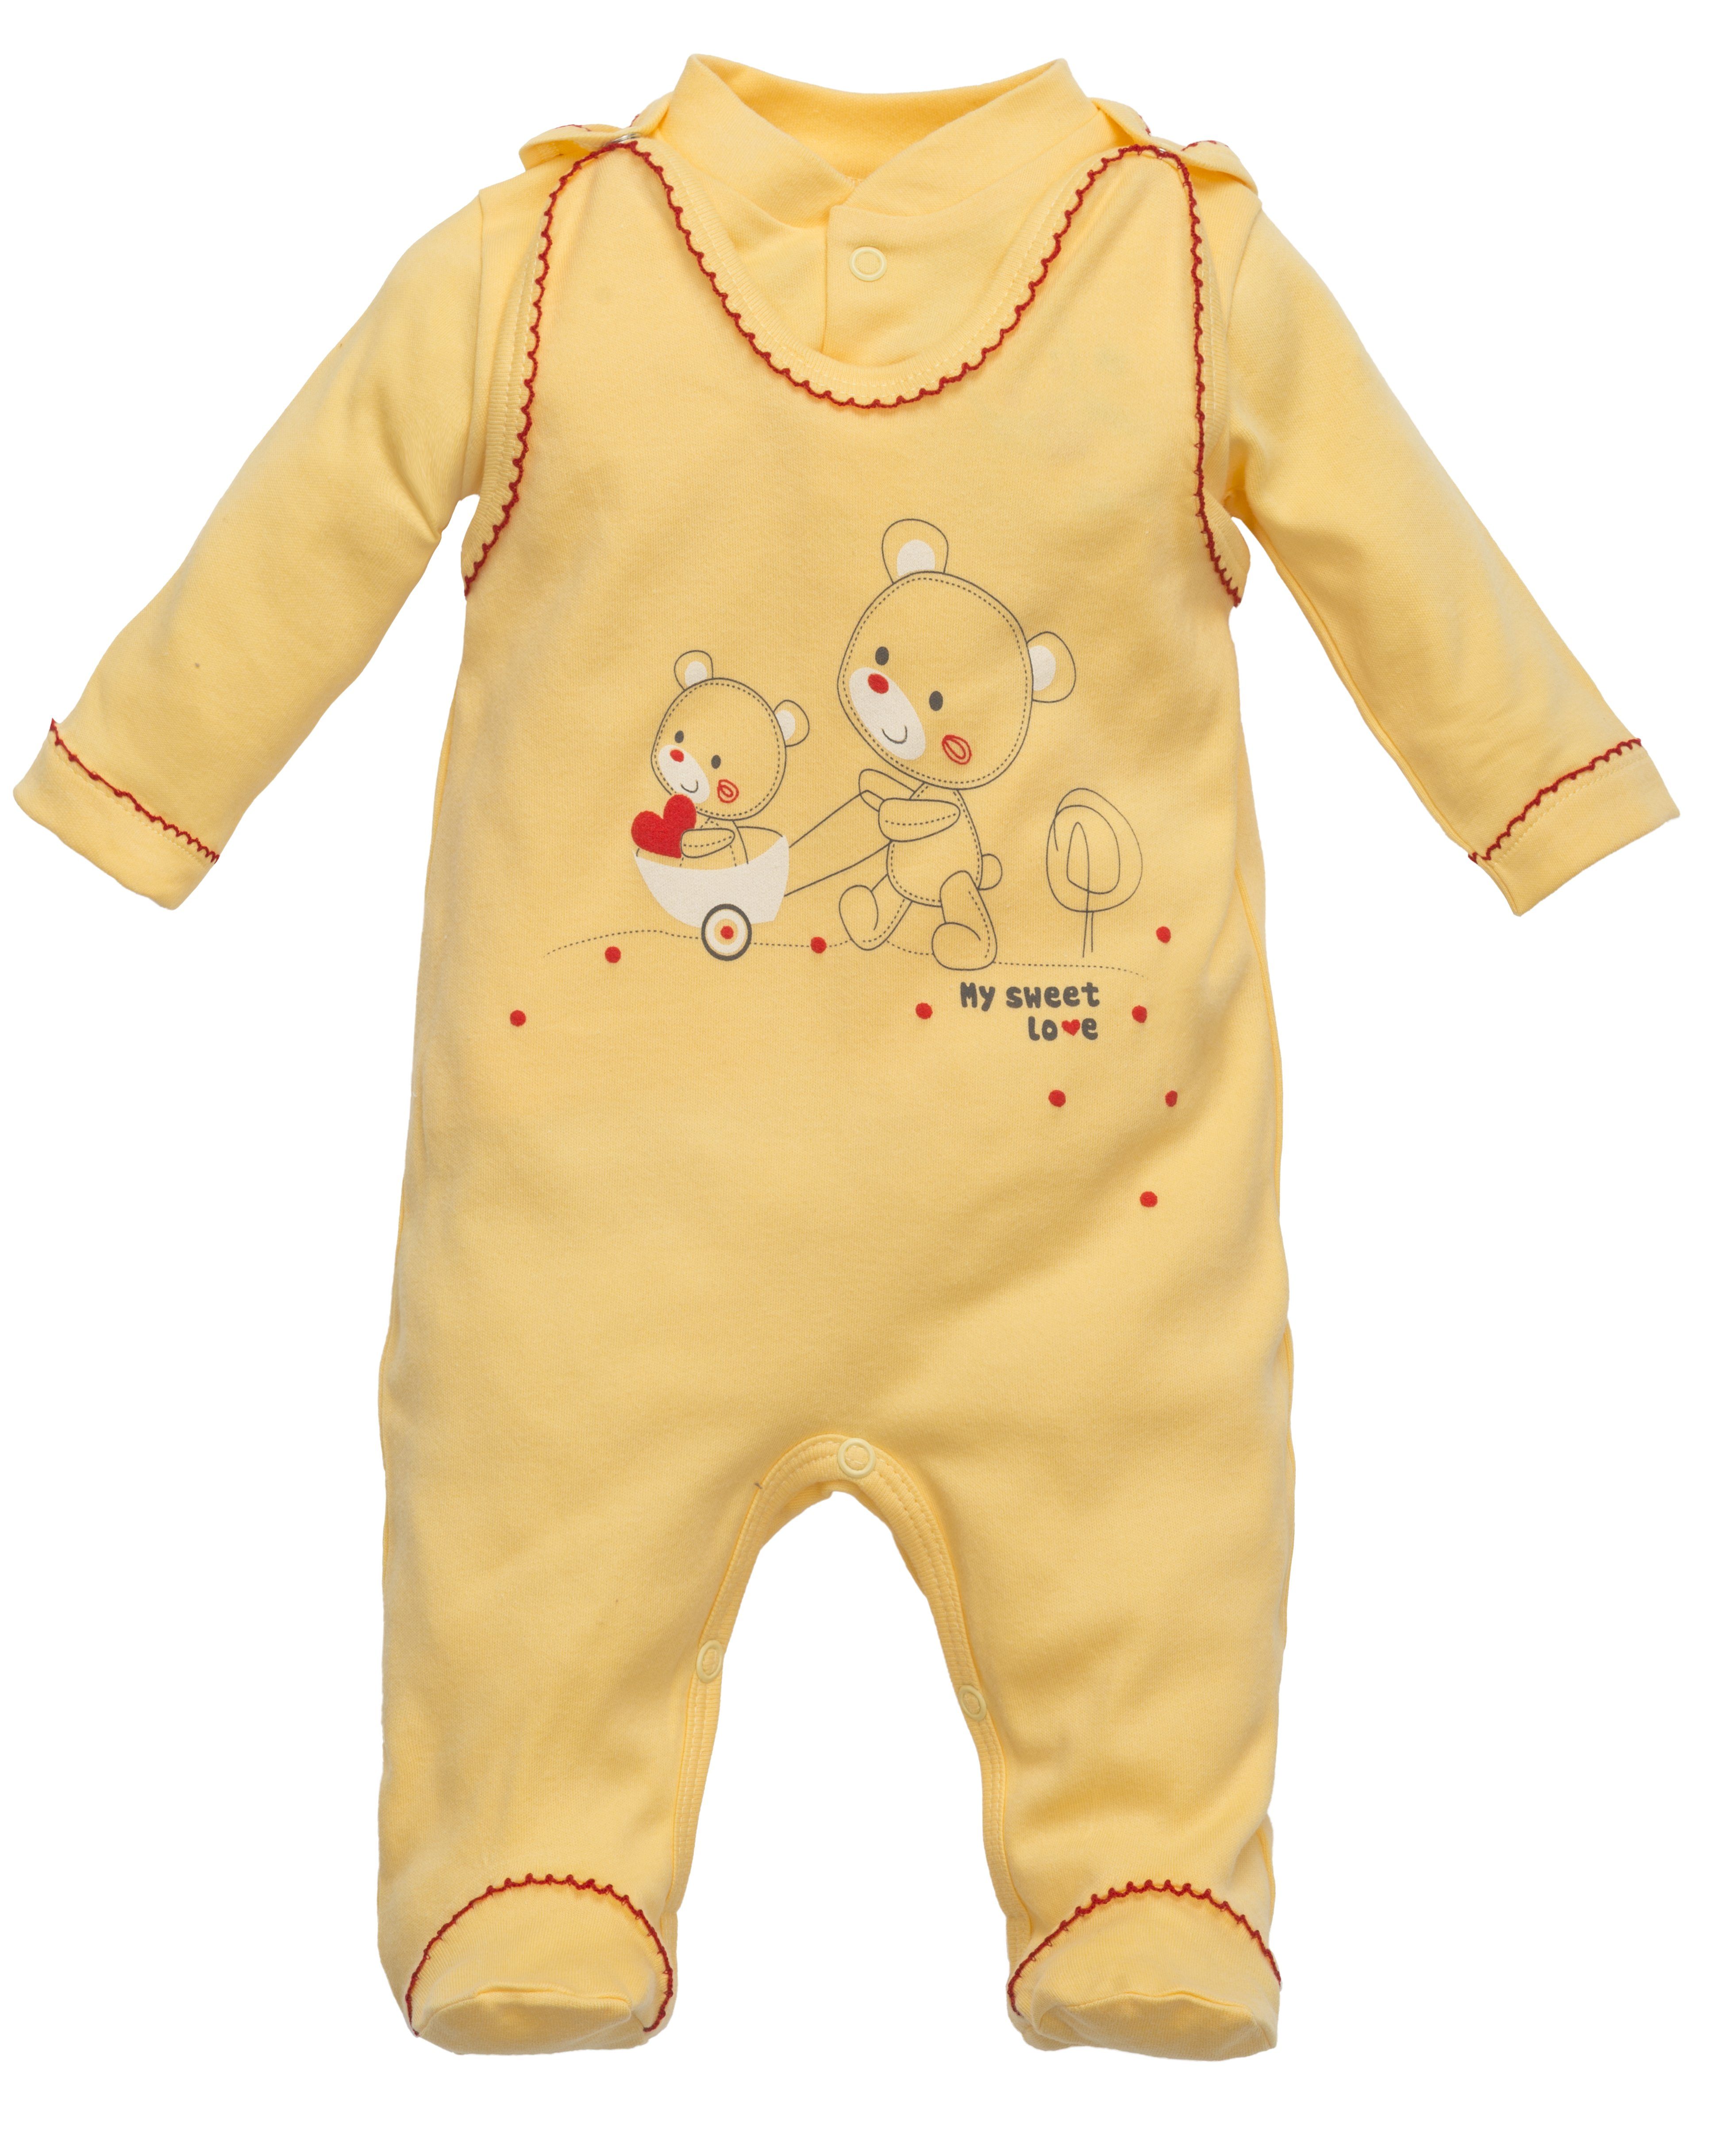 Neugeborenen Set Kleidung Baby Kleidung Mädchen & Jungs 5 Teile 100% Baumwolle 